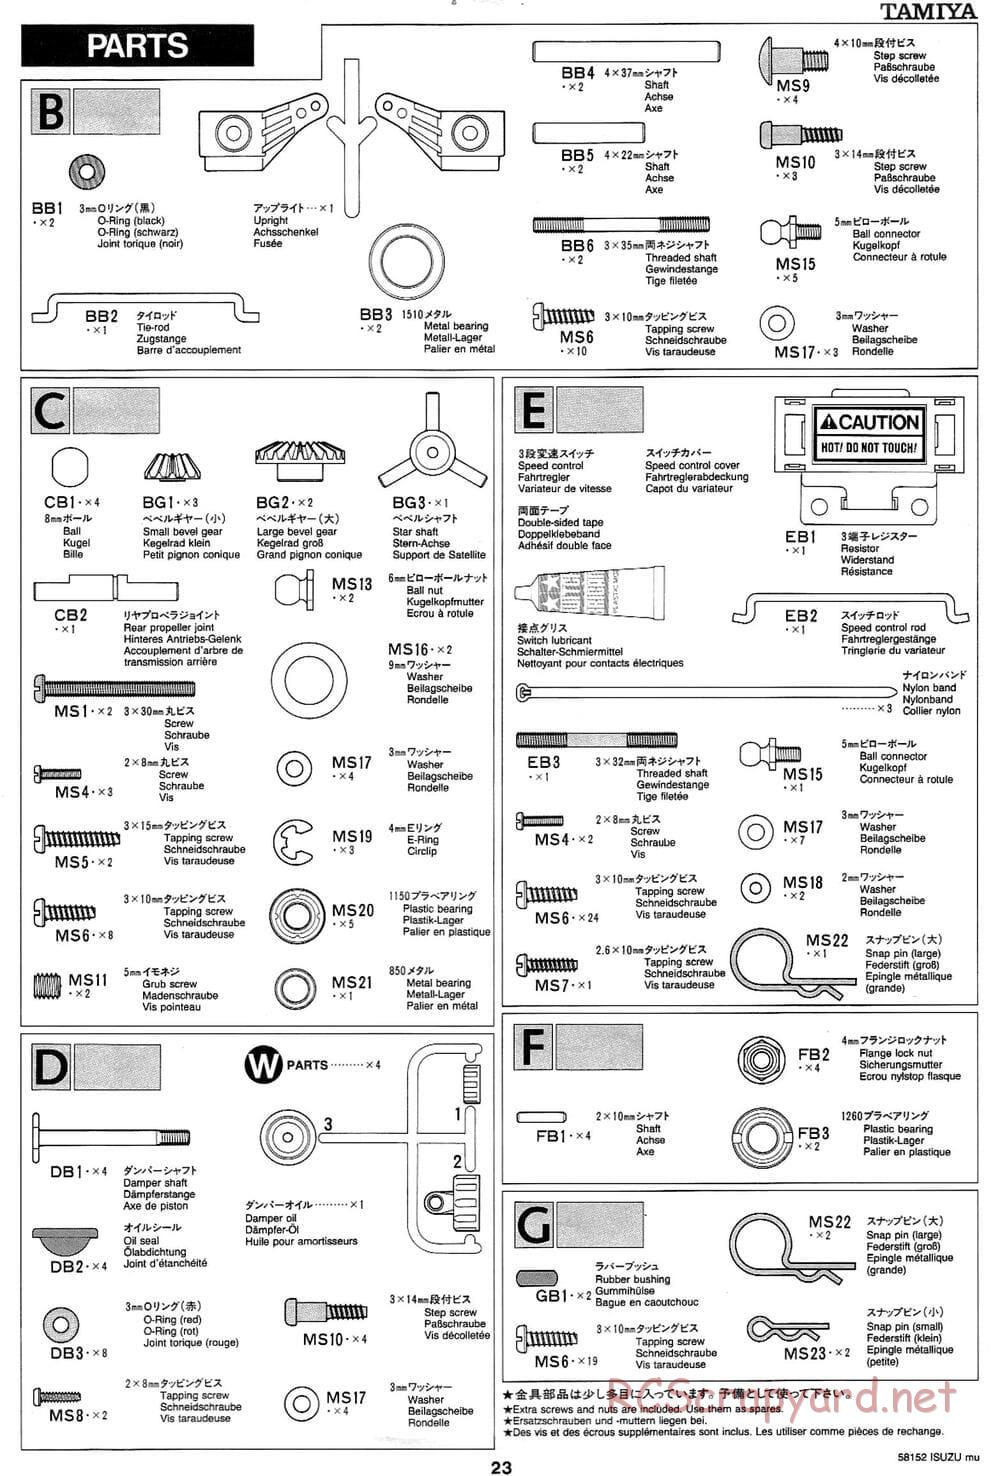 Tamiya - Isuzu Mu - CC-01 Chassis - Manual - Page 23